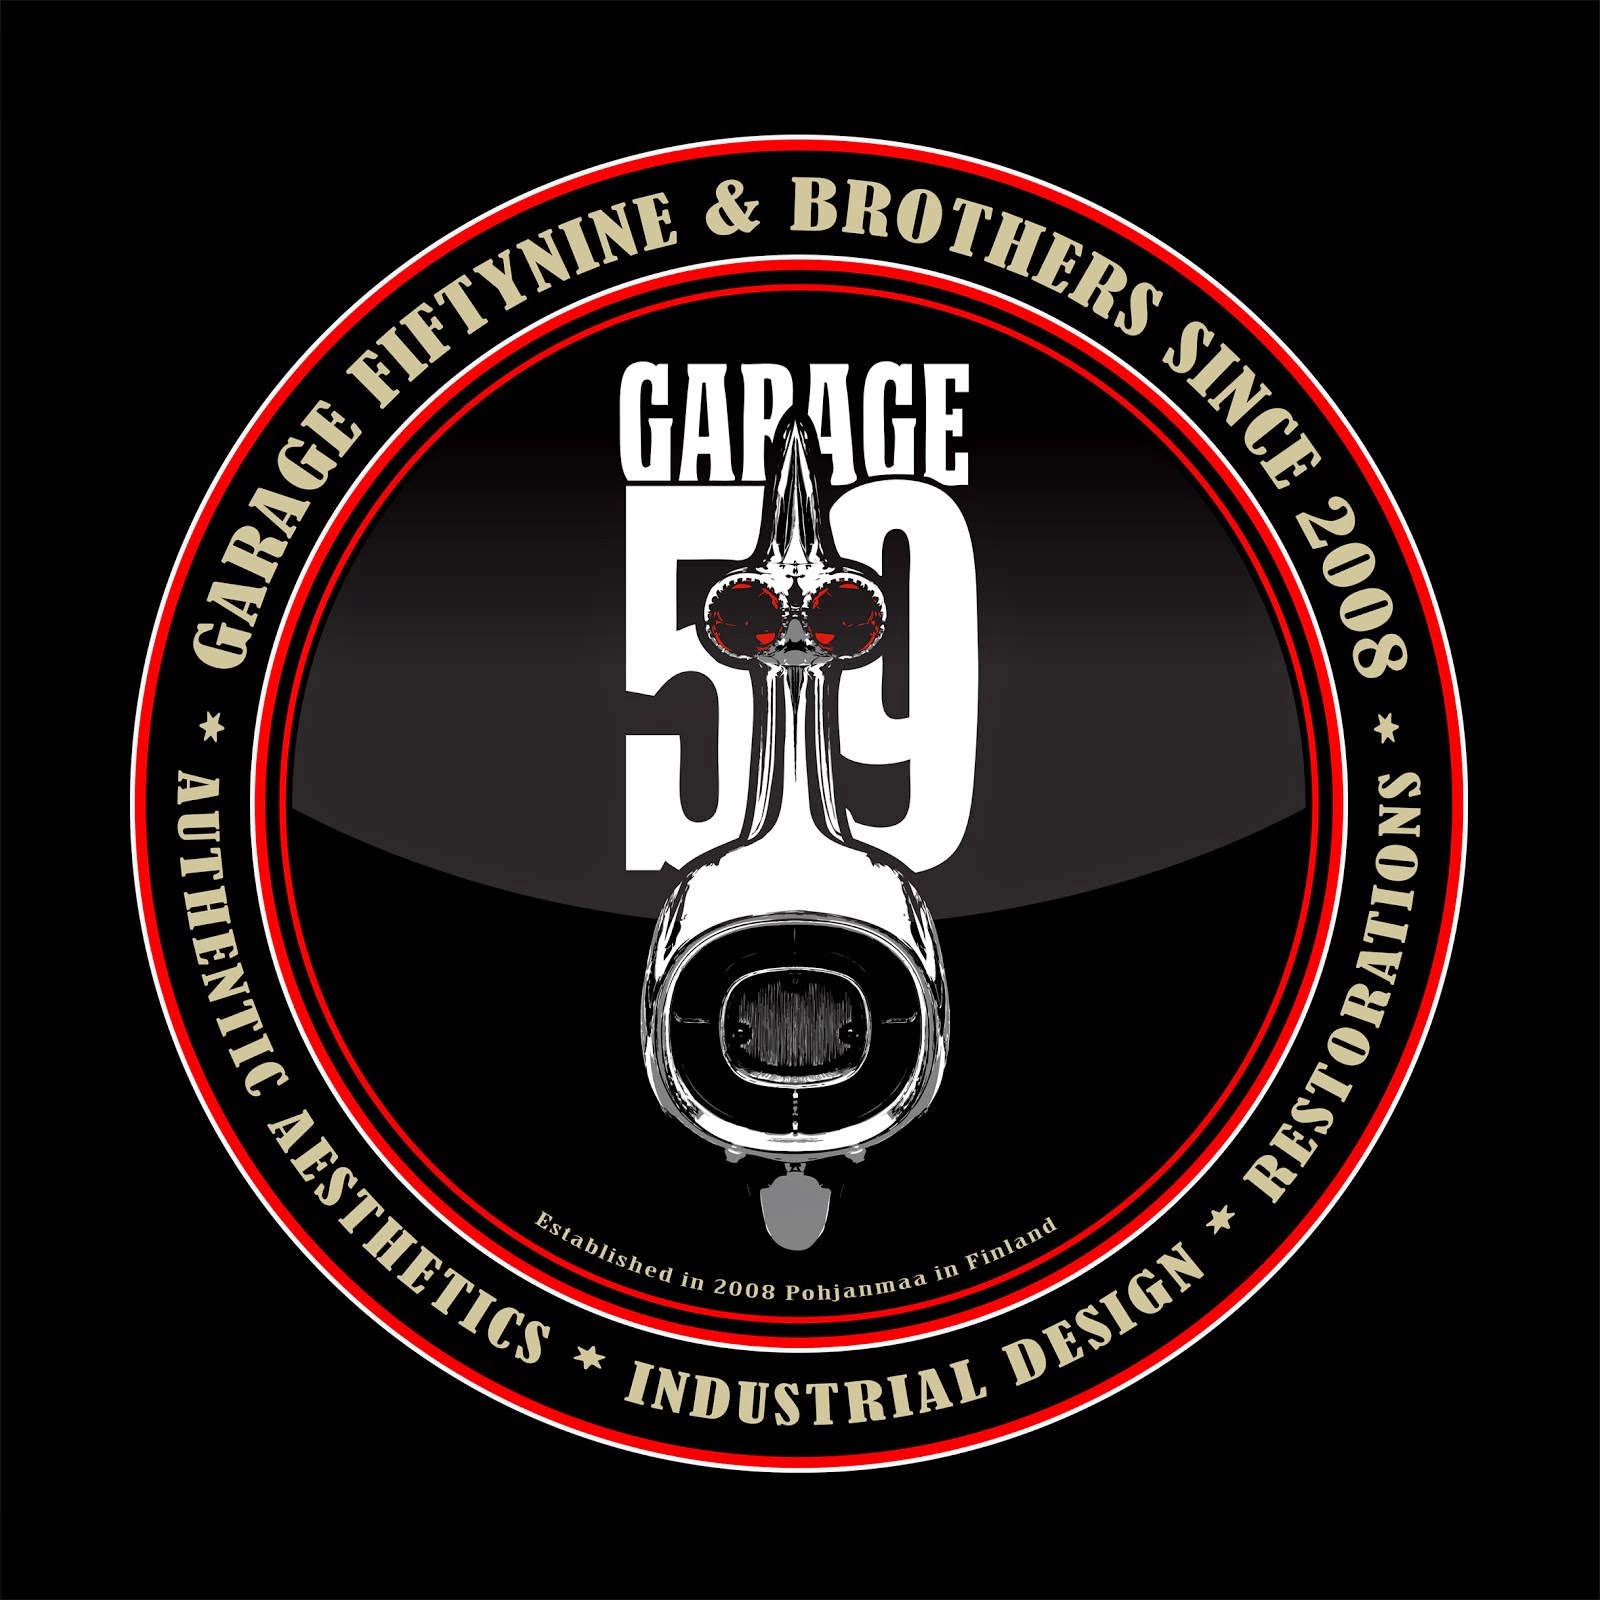 Garage fiftynine